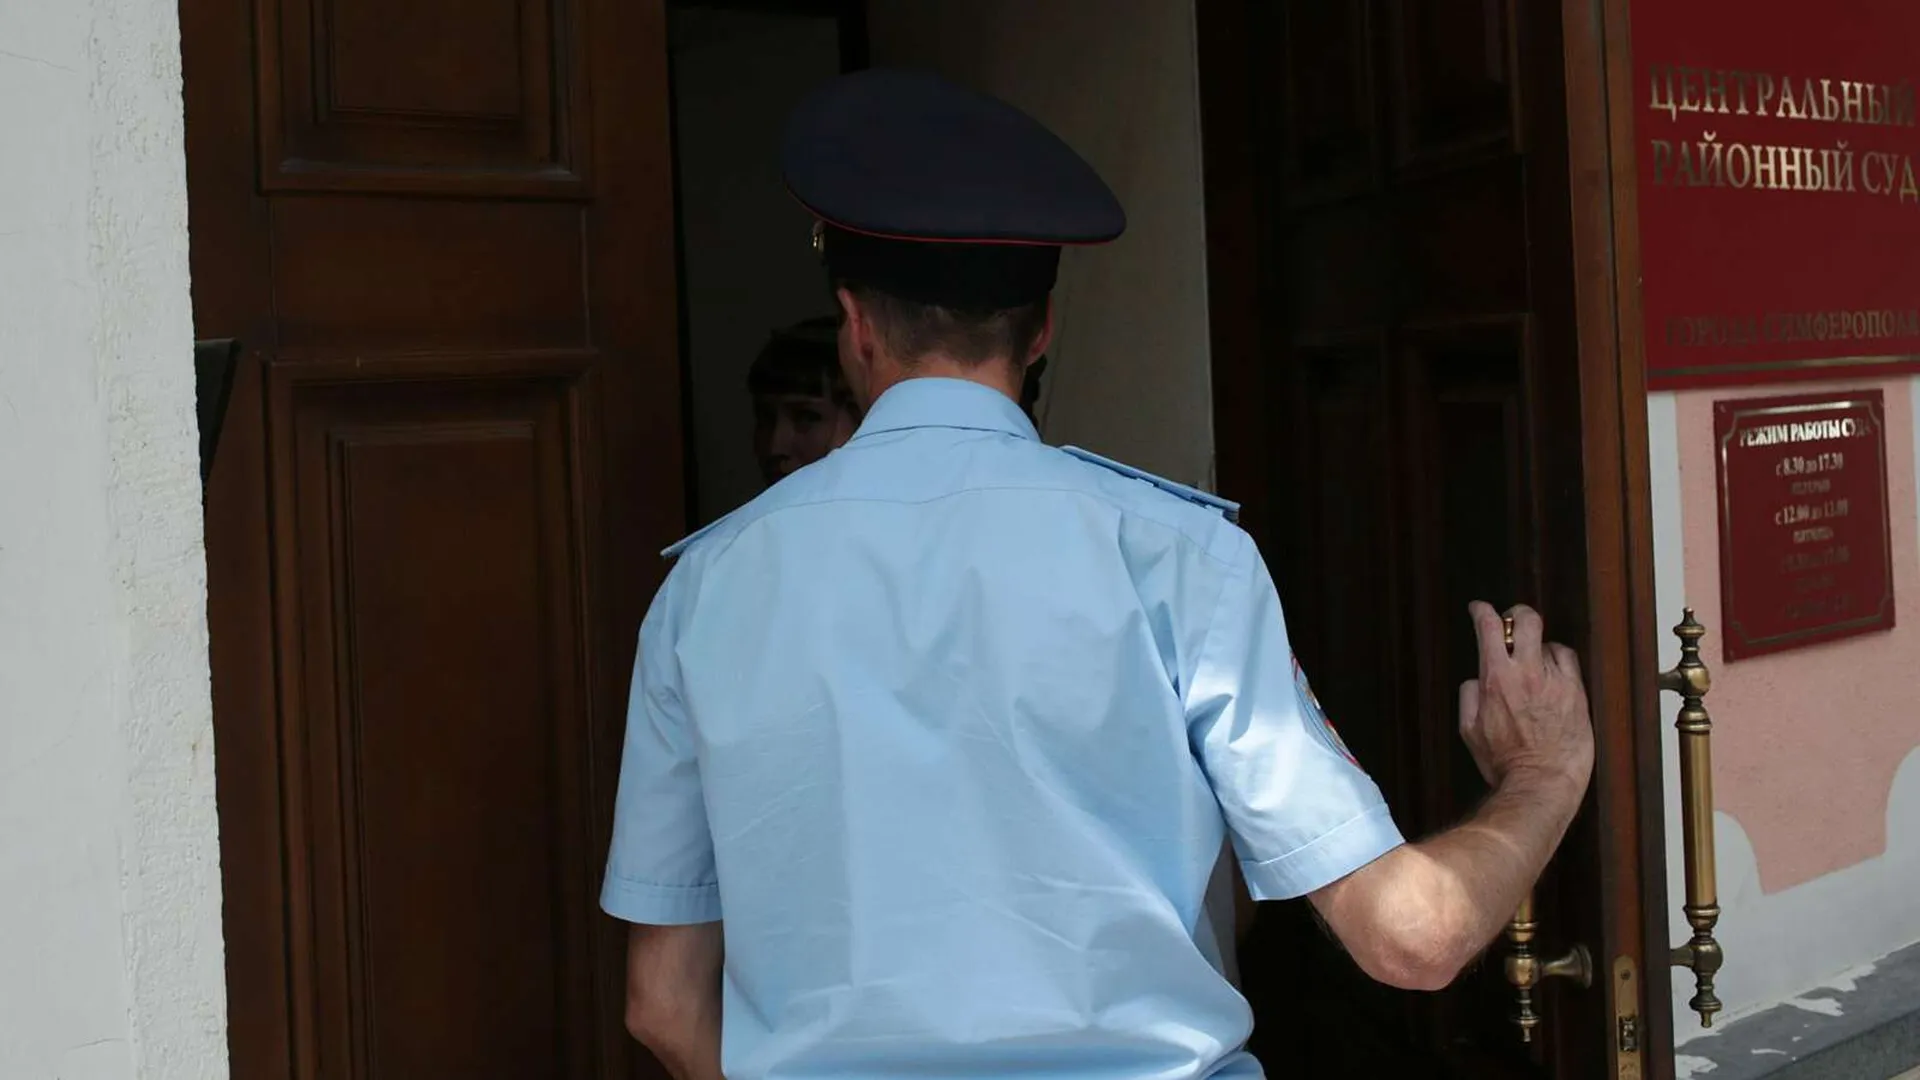 Пресненский суд арестовал обвиняемого по делу об отравлении семьи арбузом в Москве